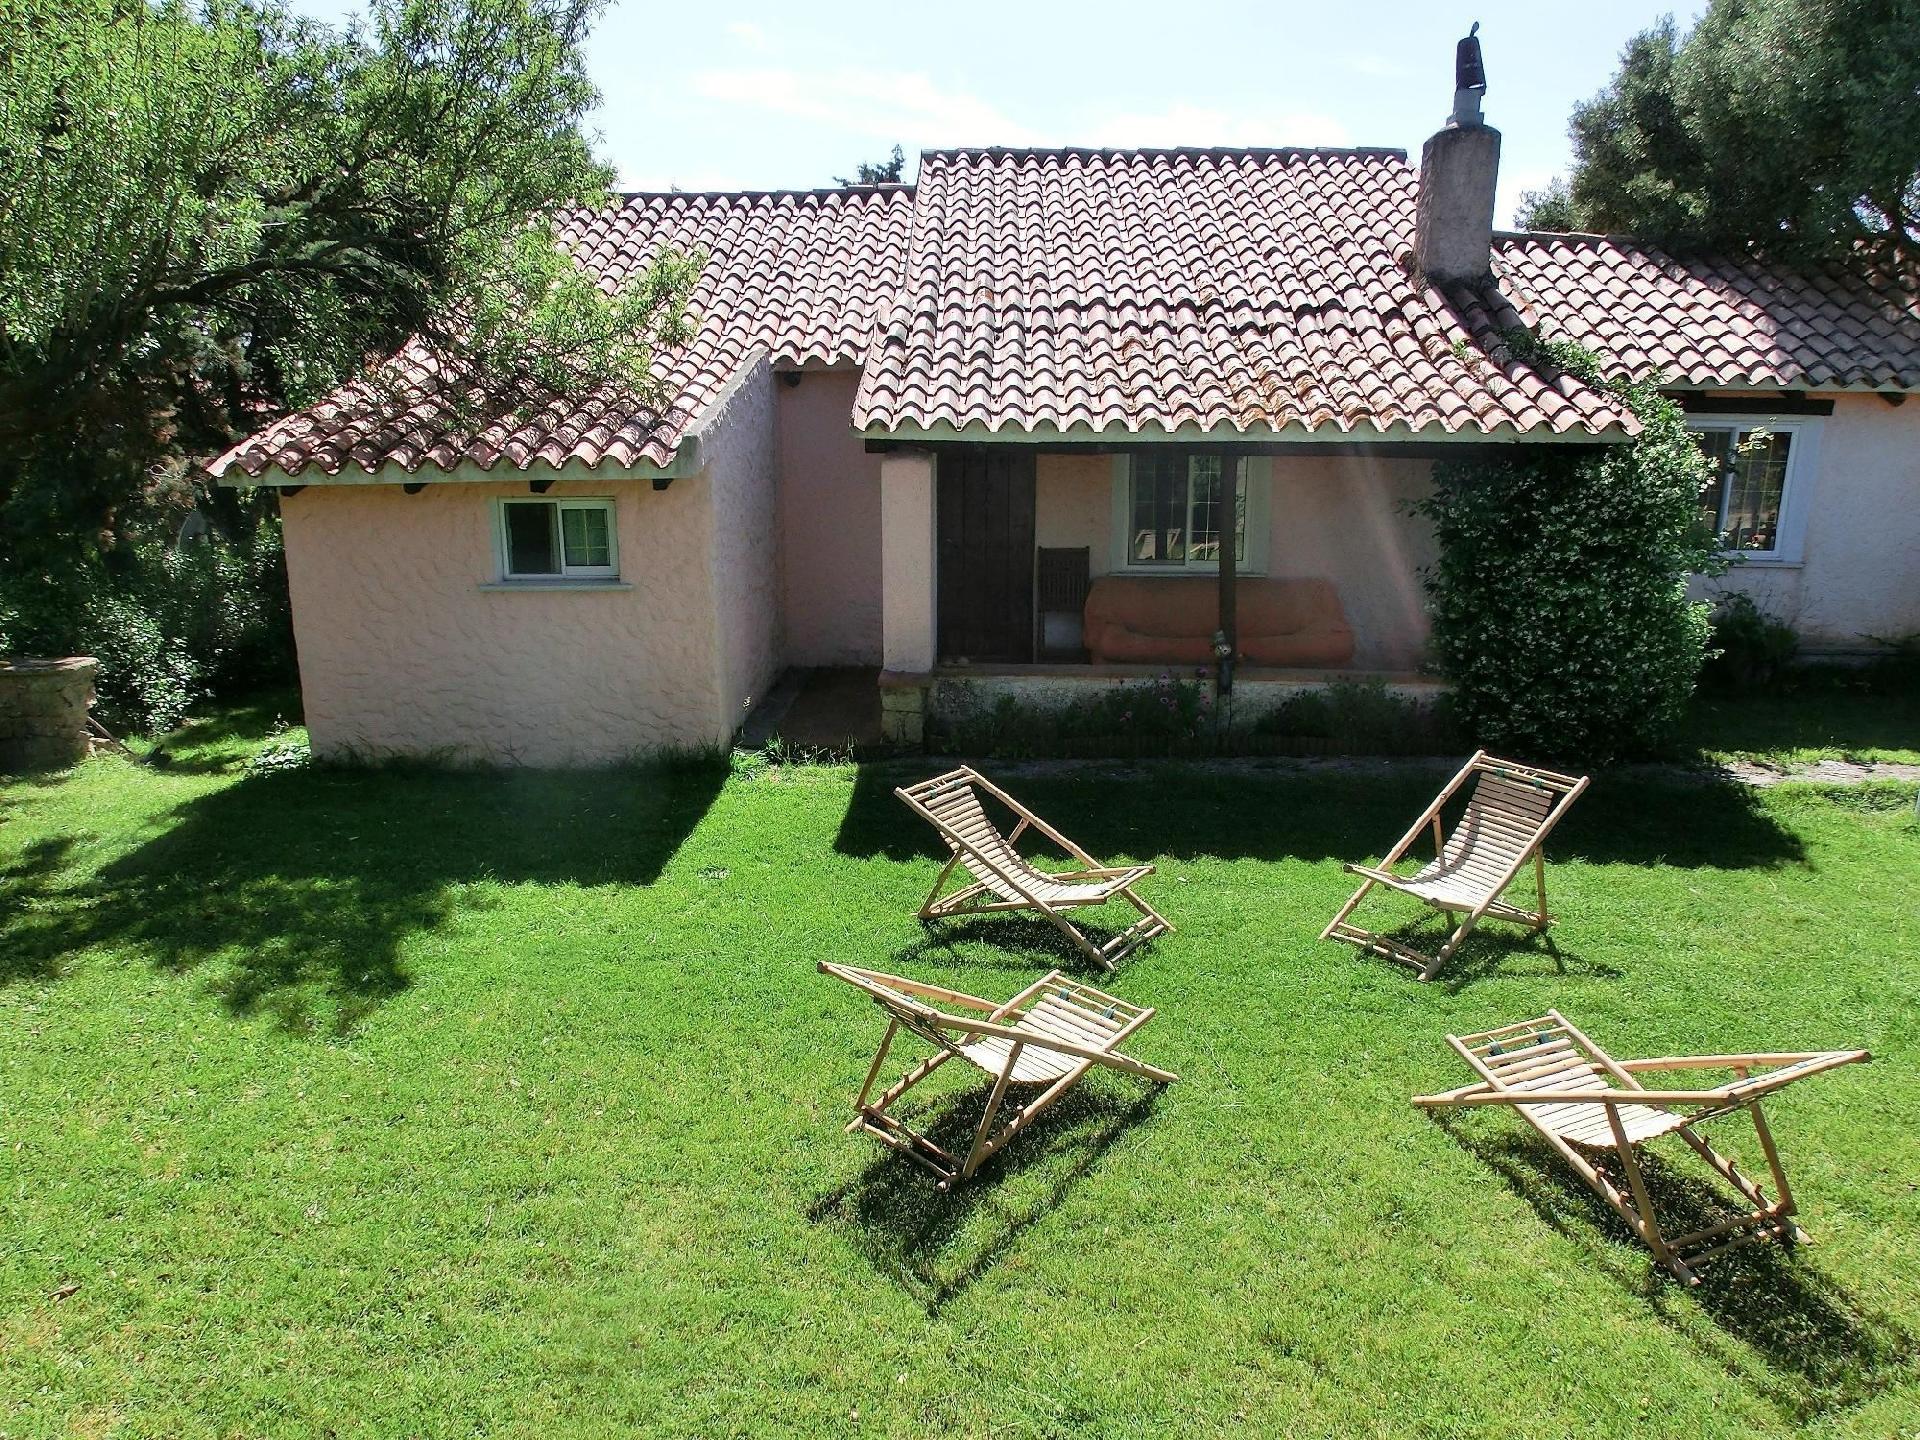 Landhaus mit Terrasse, Garten und kleinem Pool, et Ferienhaus in Italien